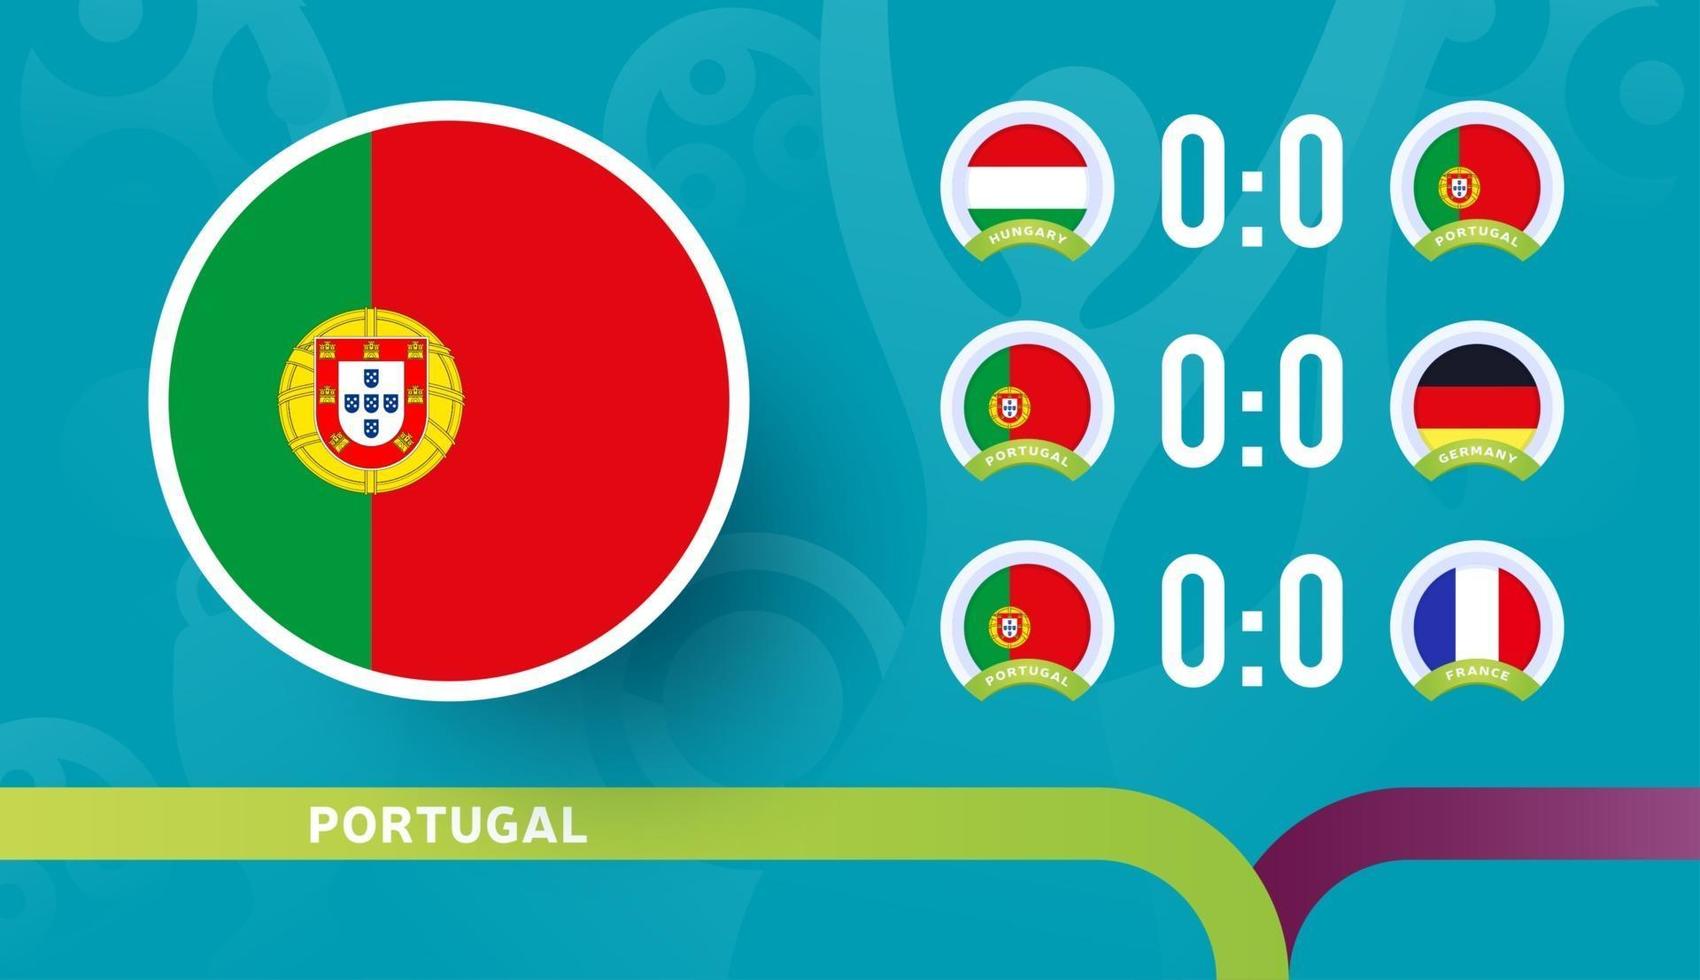 la nazionale portoghese programma le partite della fase finale del campionato di calcio 2020. illustrazione vettoriale delle partite di calcio 2020